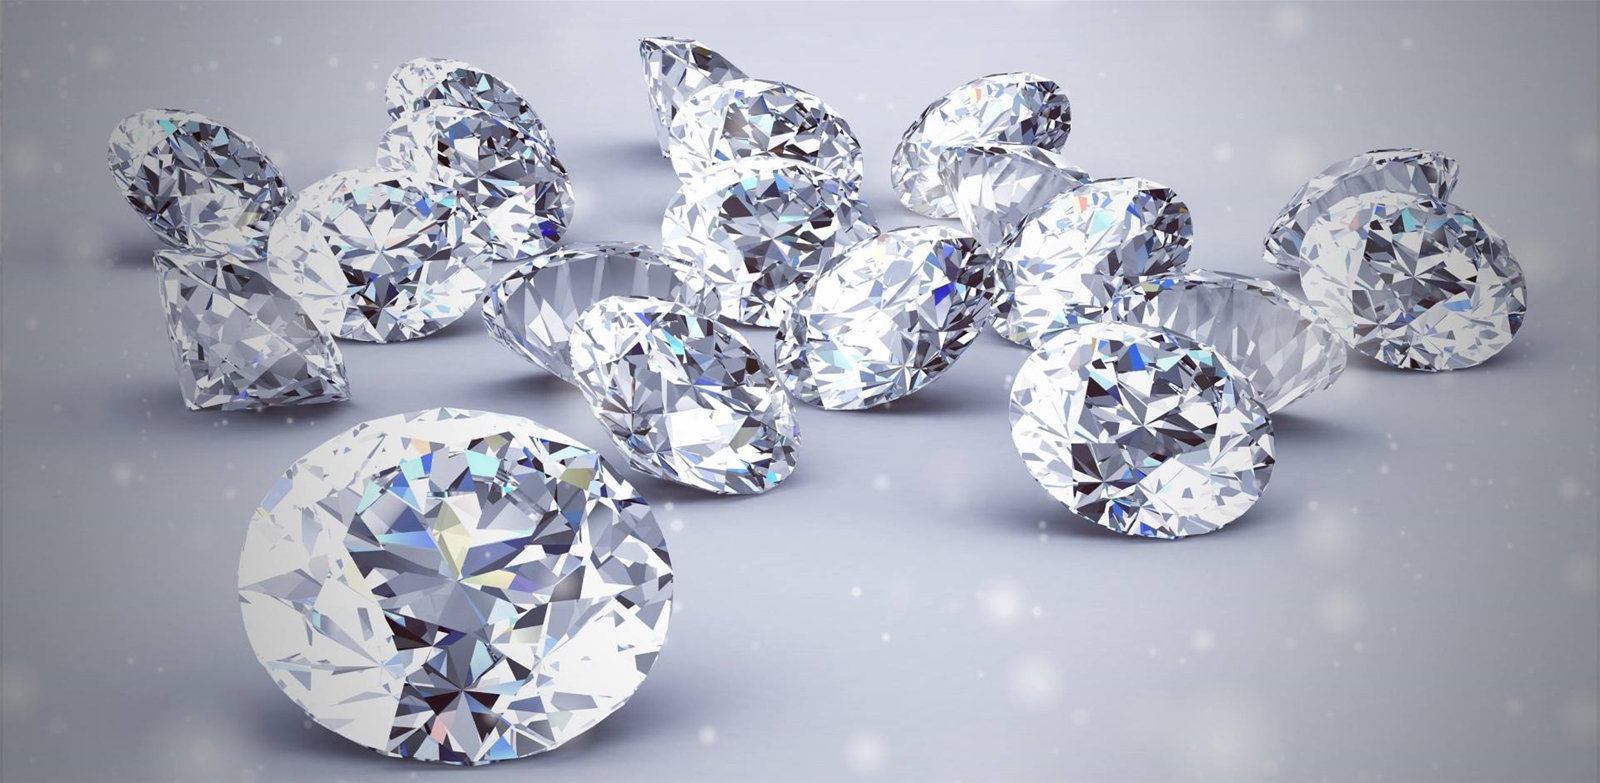   Những viên kim cương lấp lánh có thể khơi dậy lòng tham và sân si  